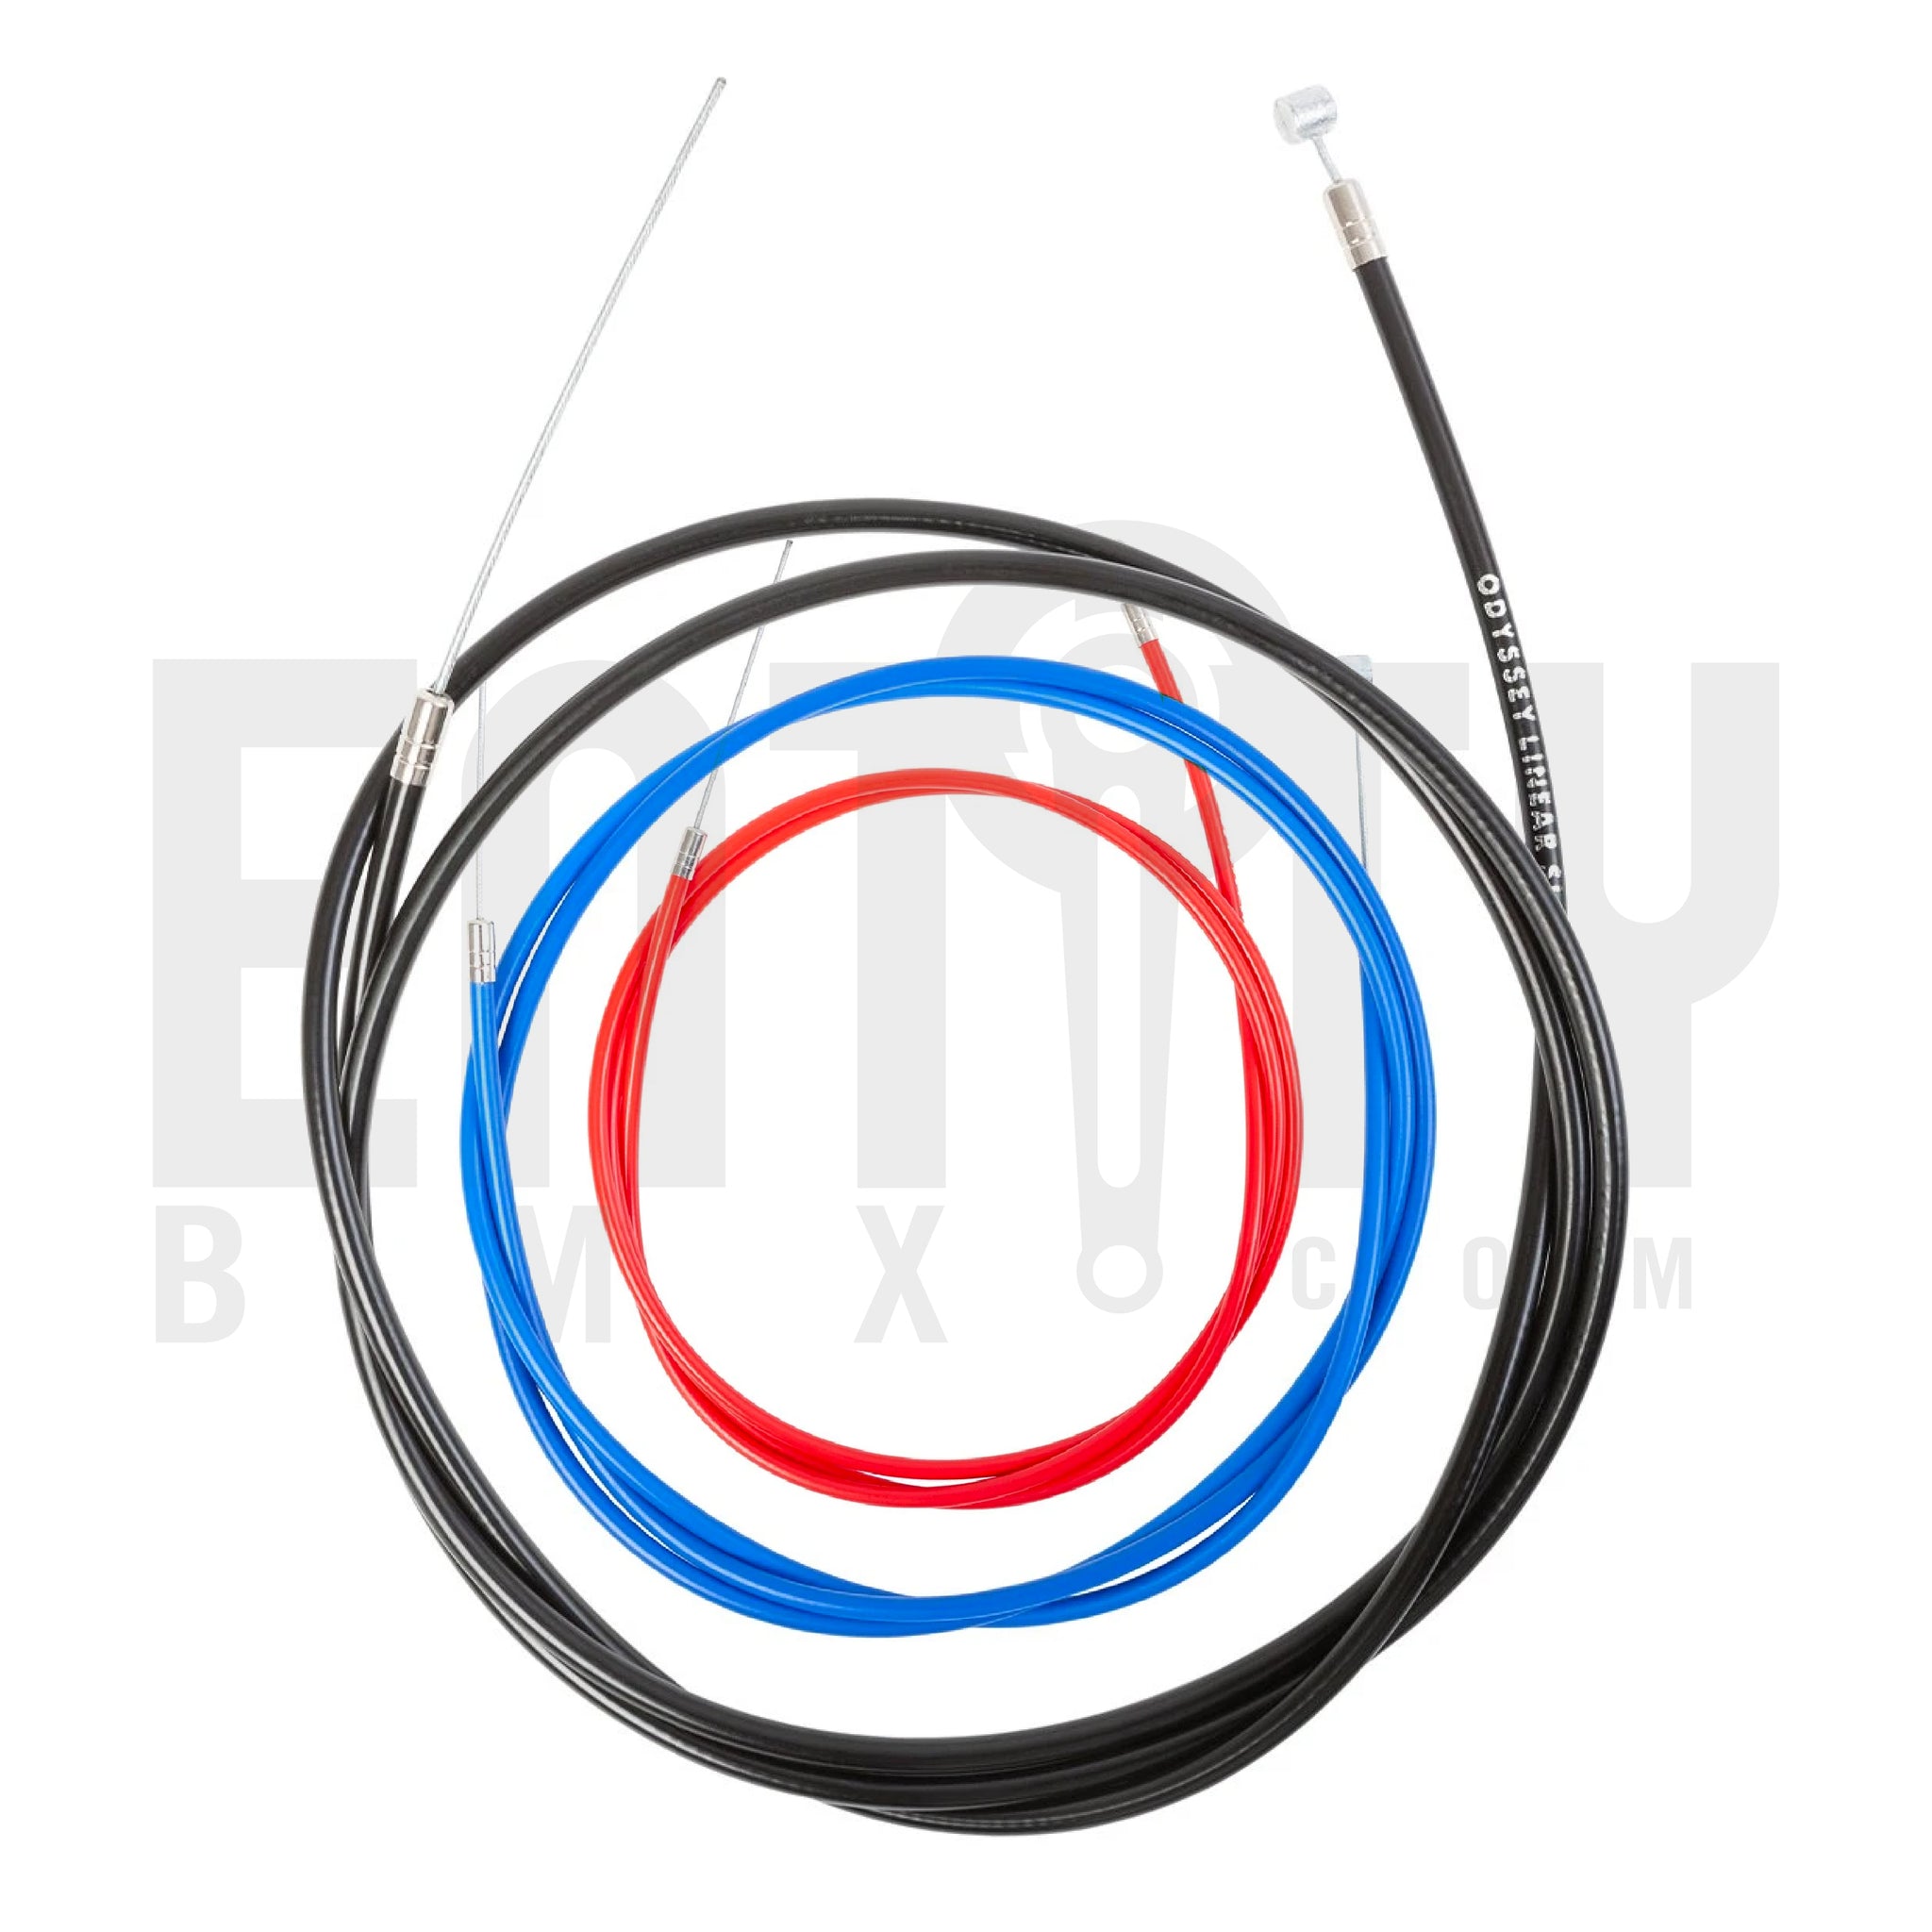 Odyssey BMX K-Shield Linear Slic Kable / Brake Cable